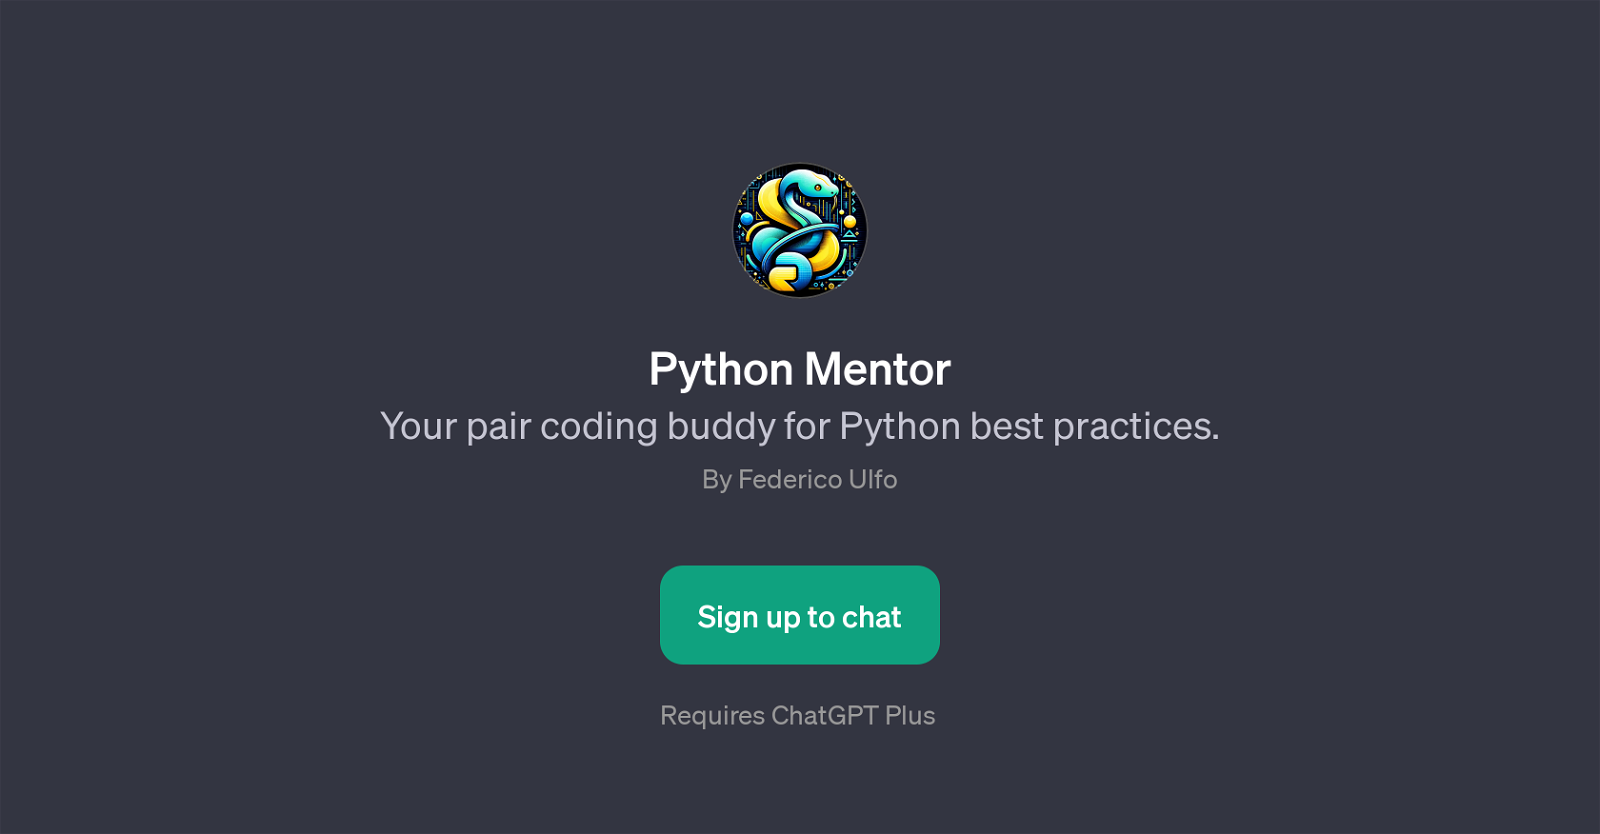 Python Mentor website